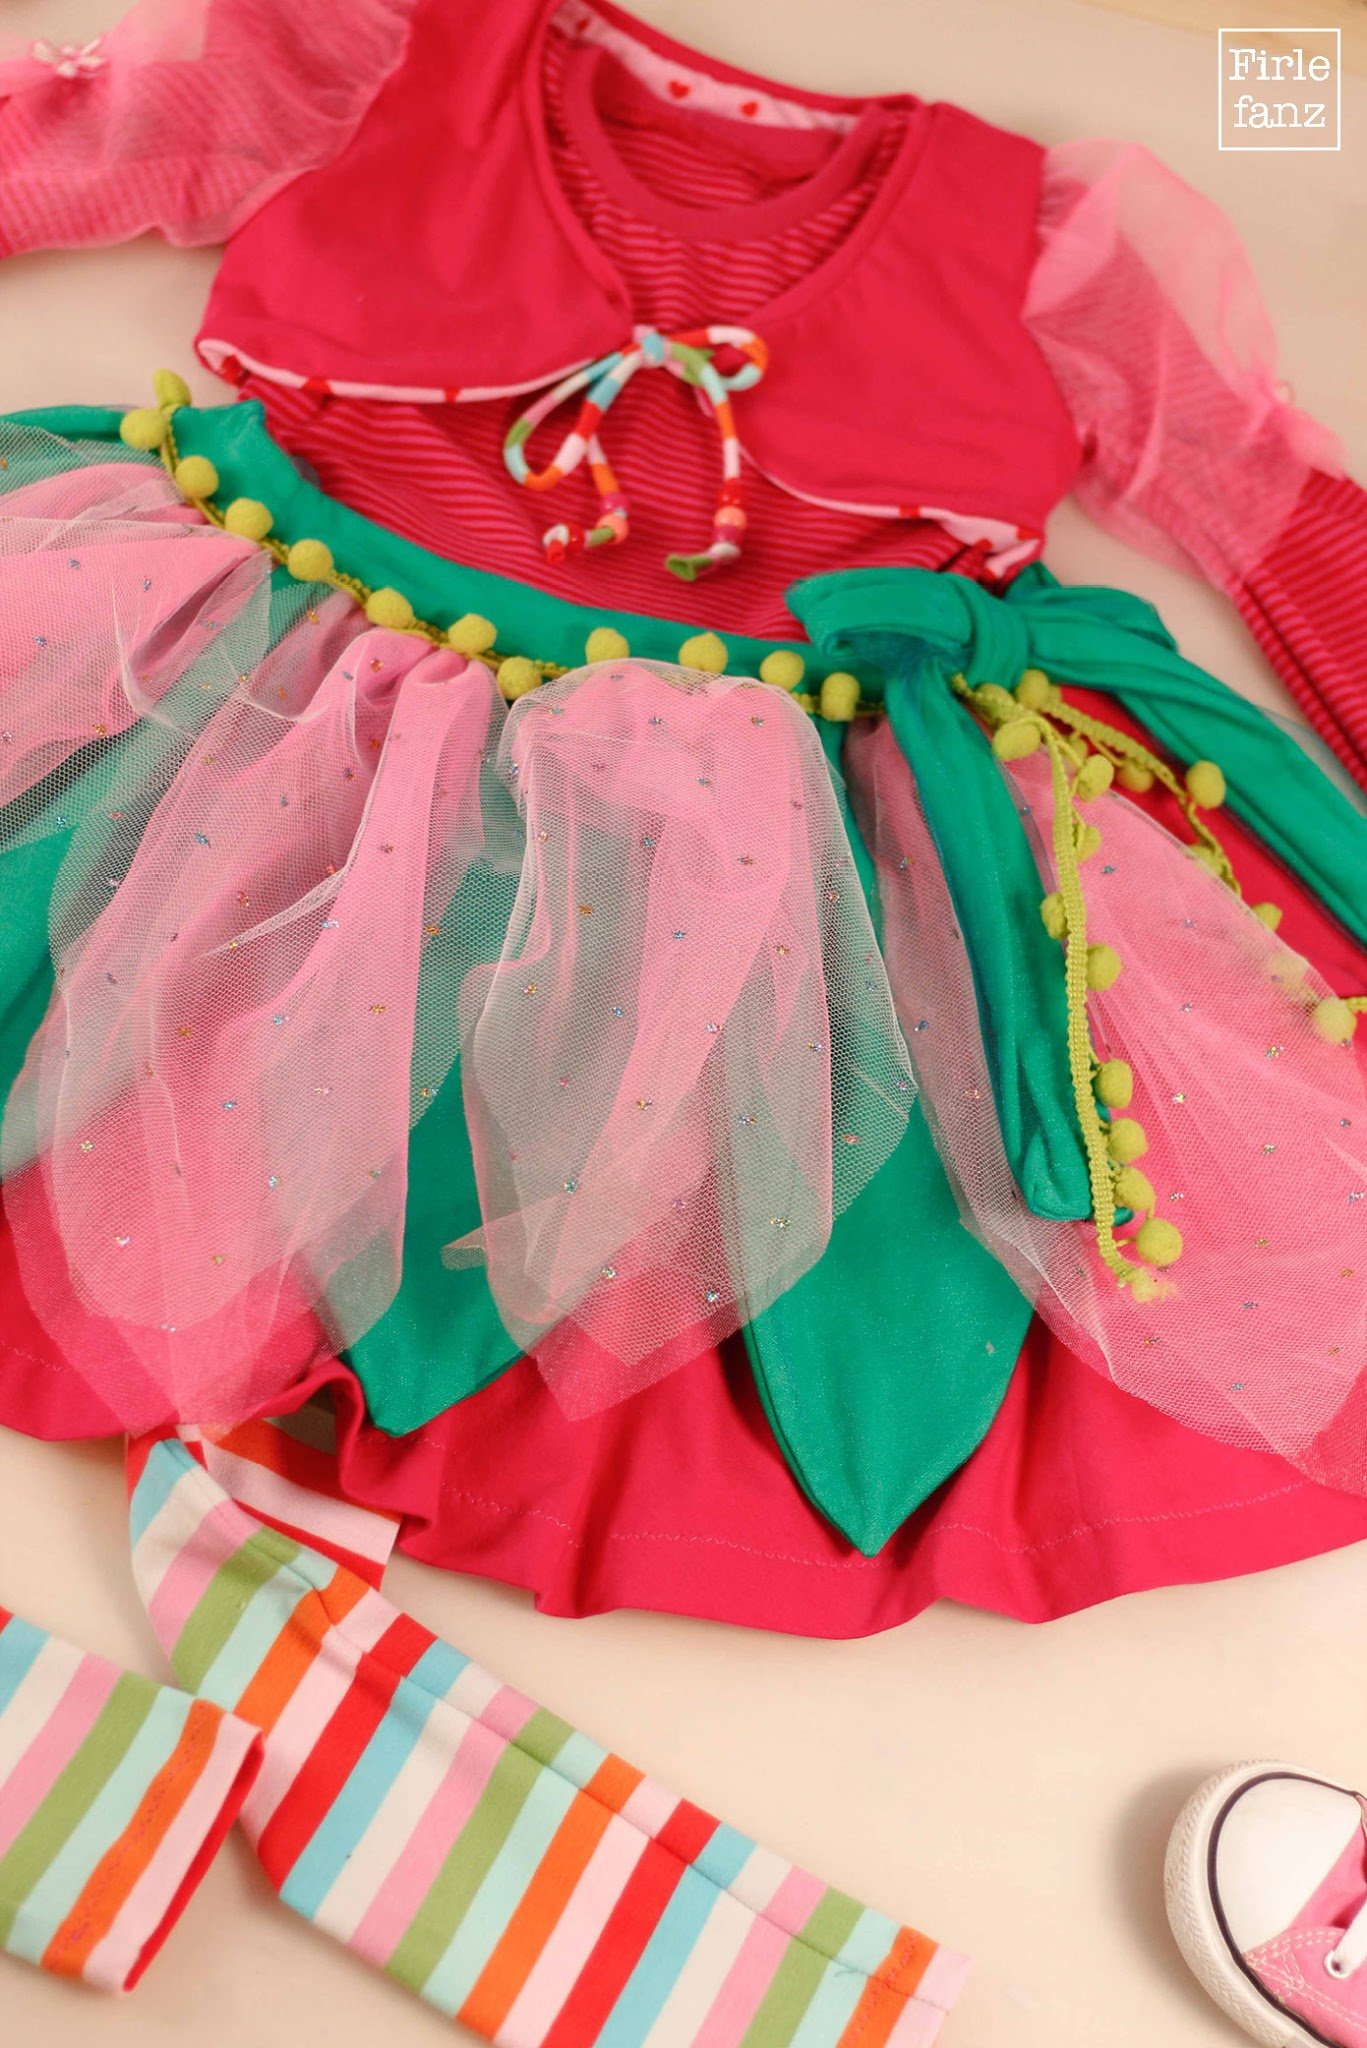 Darf Ich Vorstellen? Prinzessin Lillifee | Firlefanz Blog bestimmt für Prinzessin Lillifee Kostüm Für Erwachsene